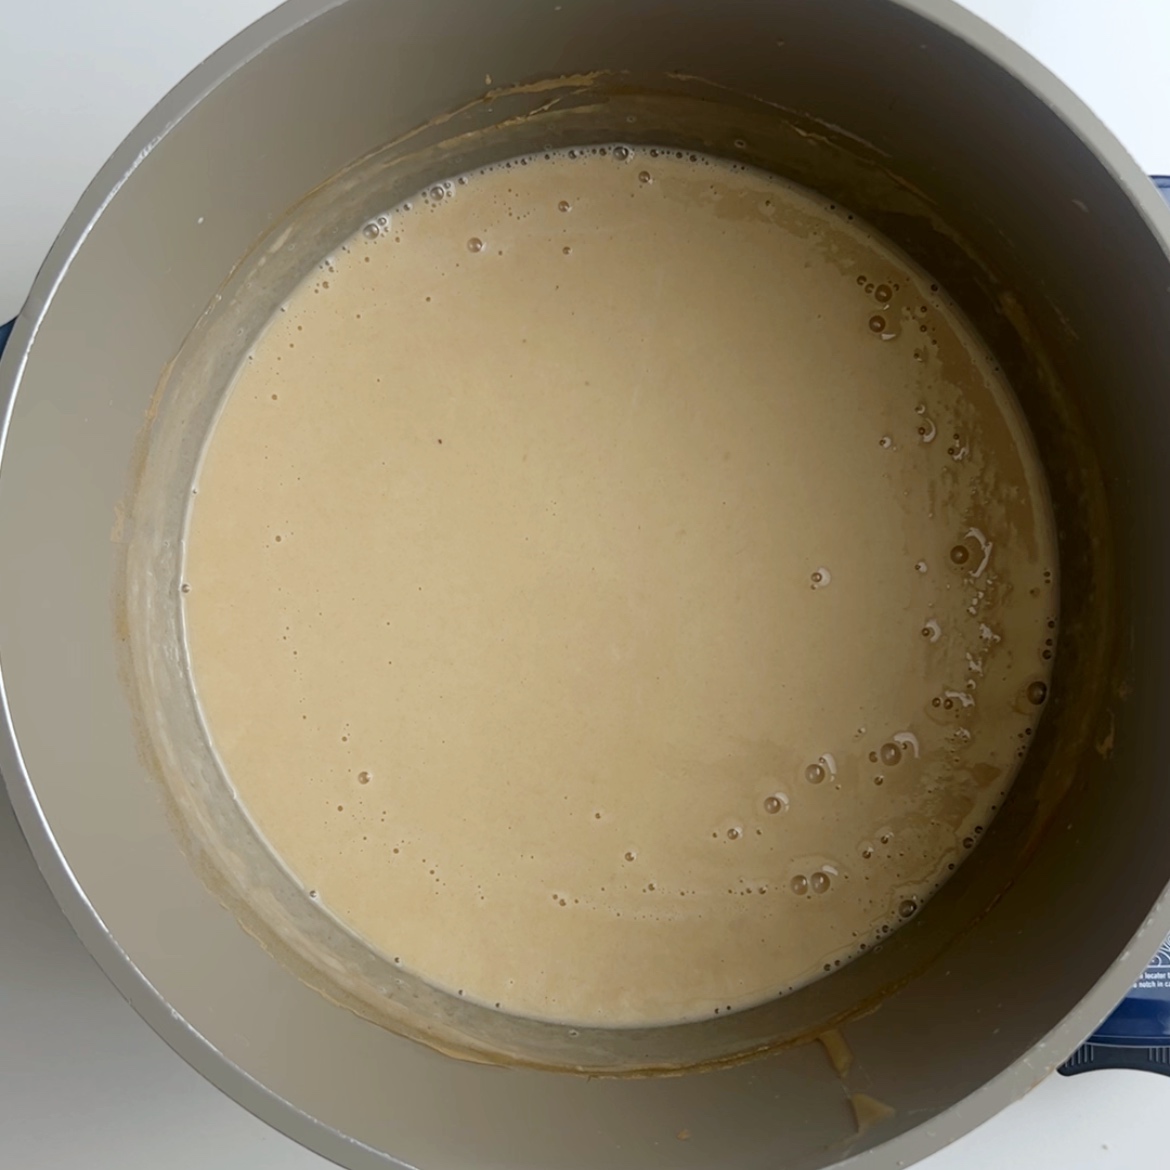 Flour porridge boiling in a pot